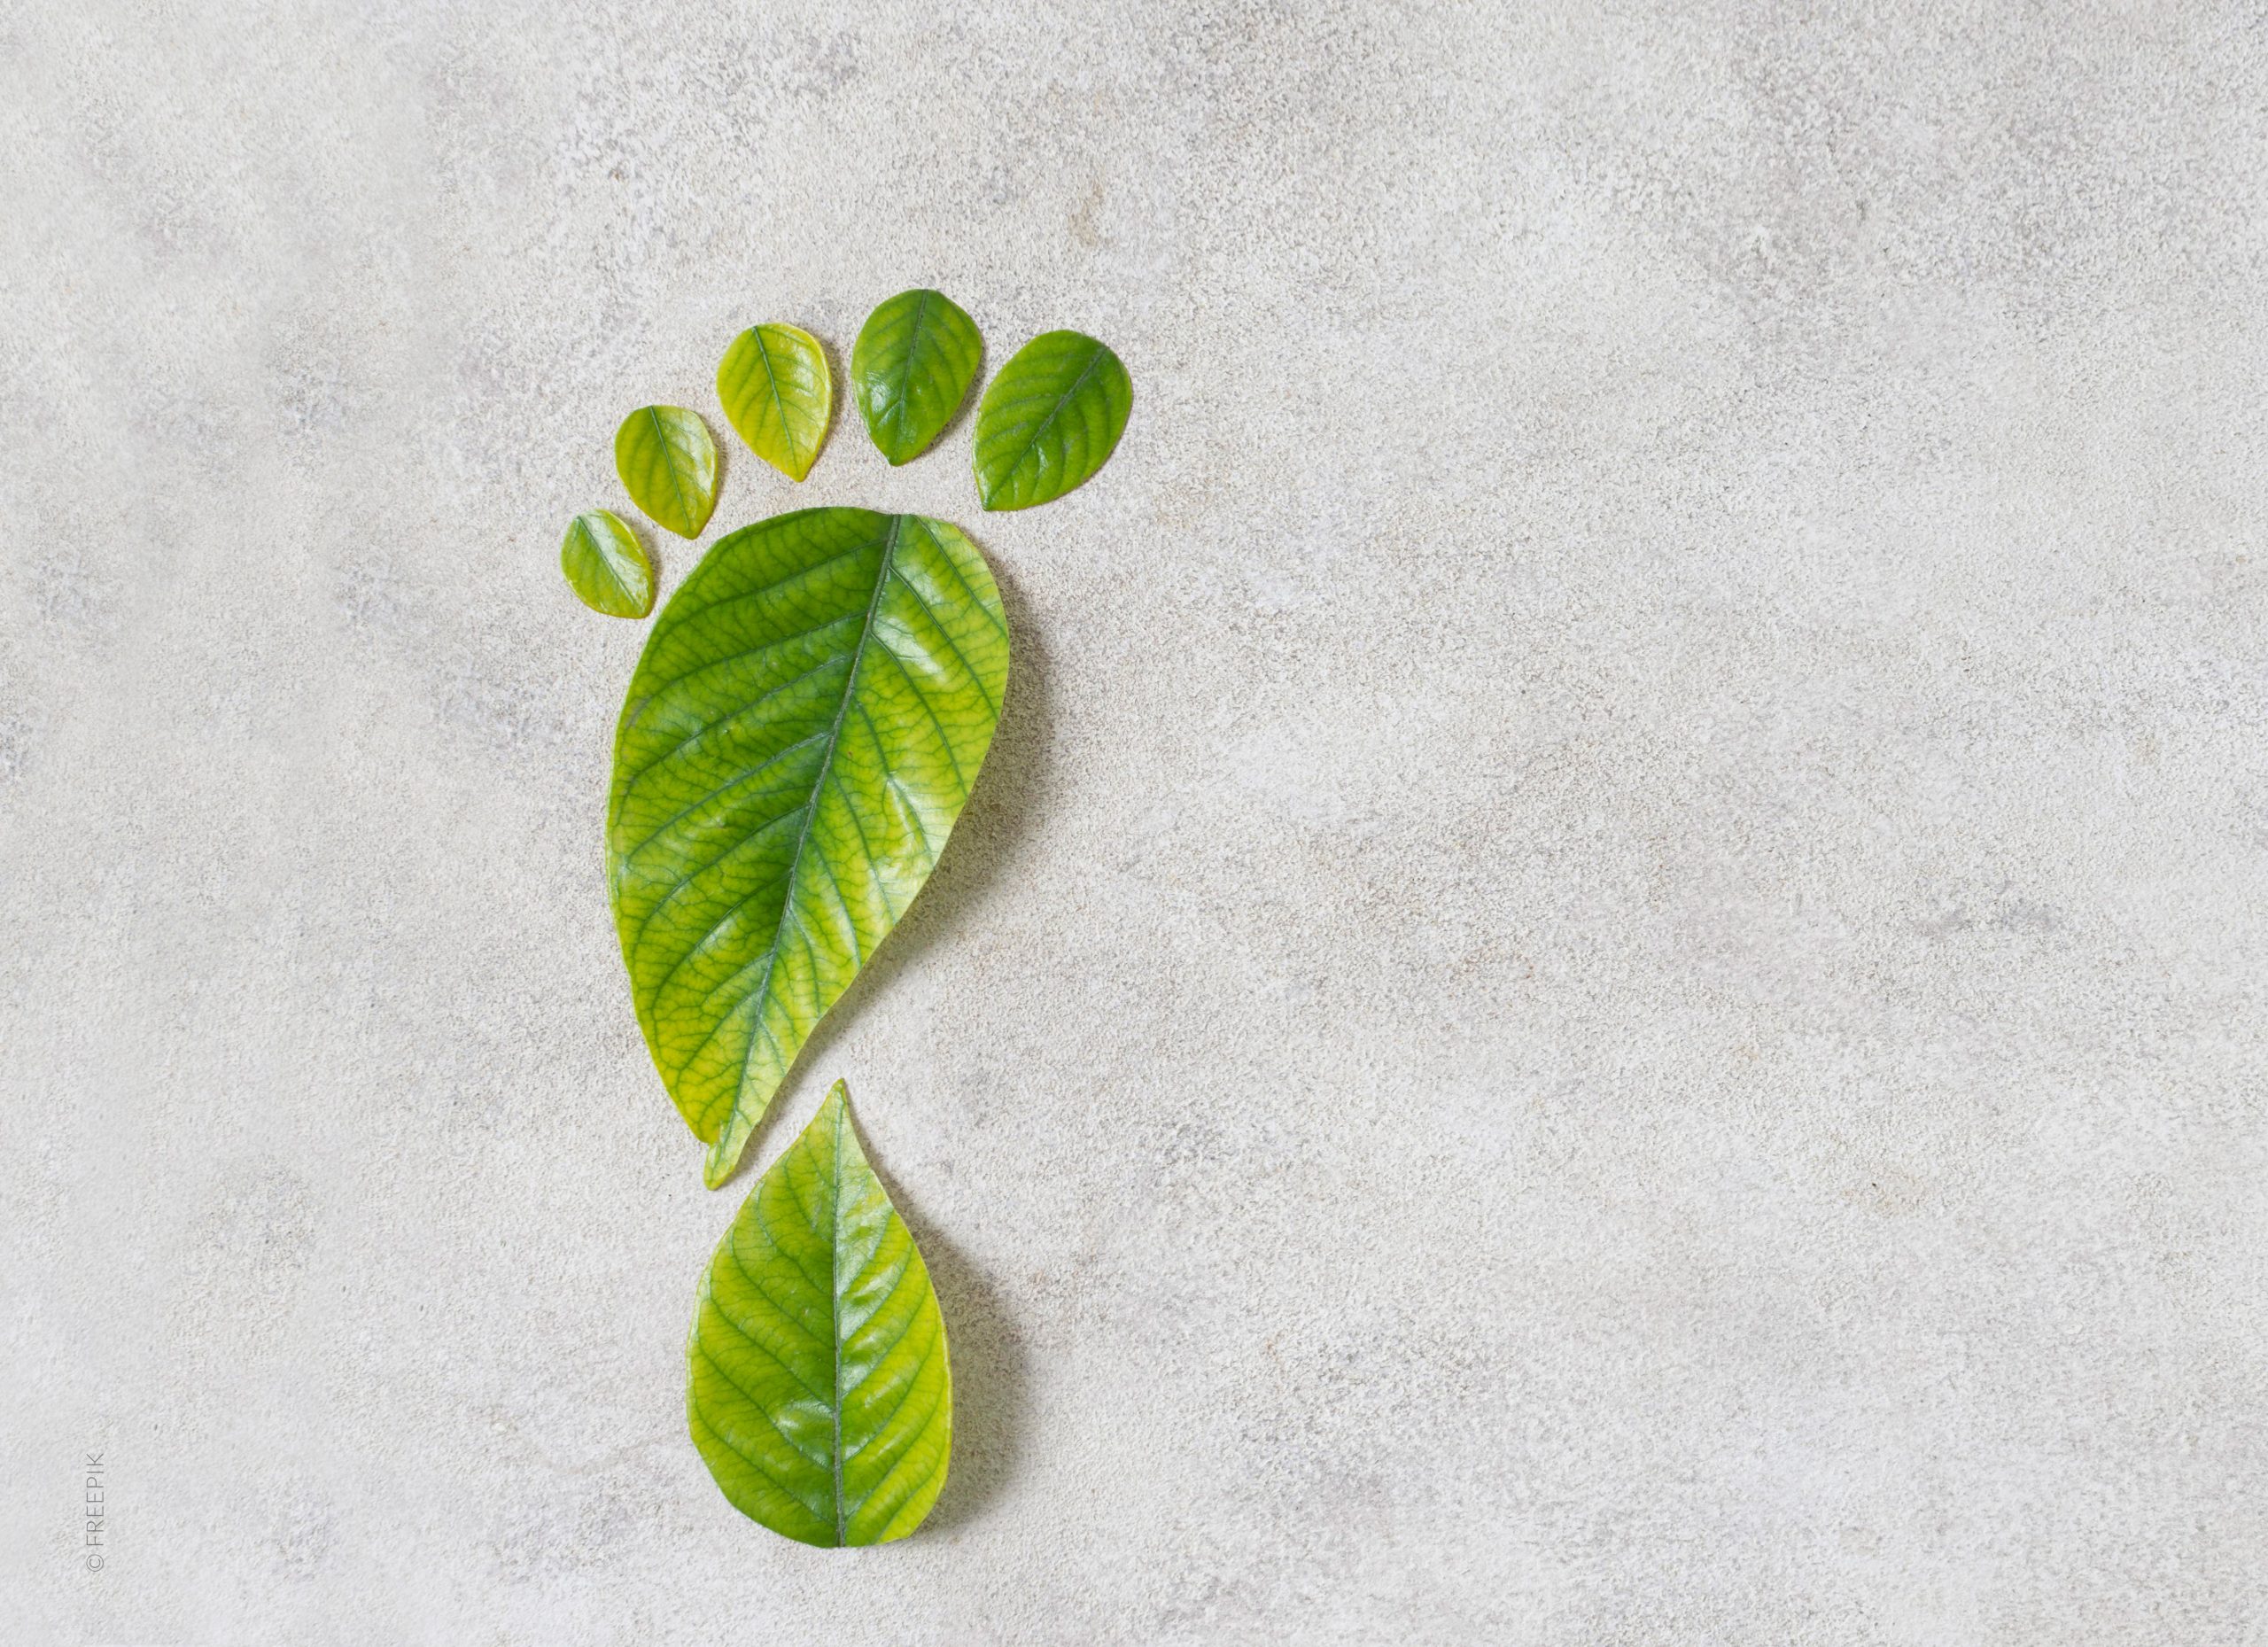 grauer Hintergrund, Blätter in Form eines Fußes, ökologischer Fußabdruck, grüne Blätter liegen auf neutralem Boden, Umweltschutz